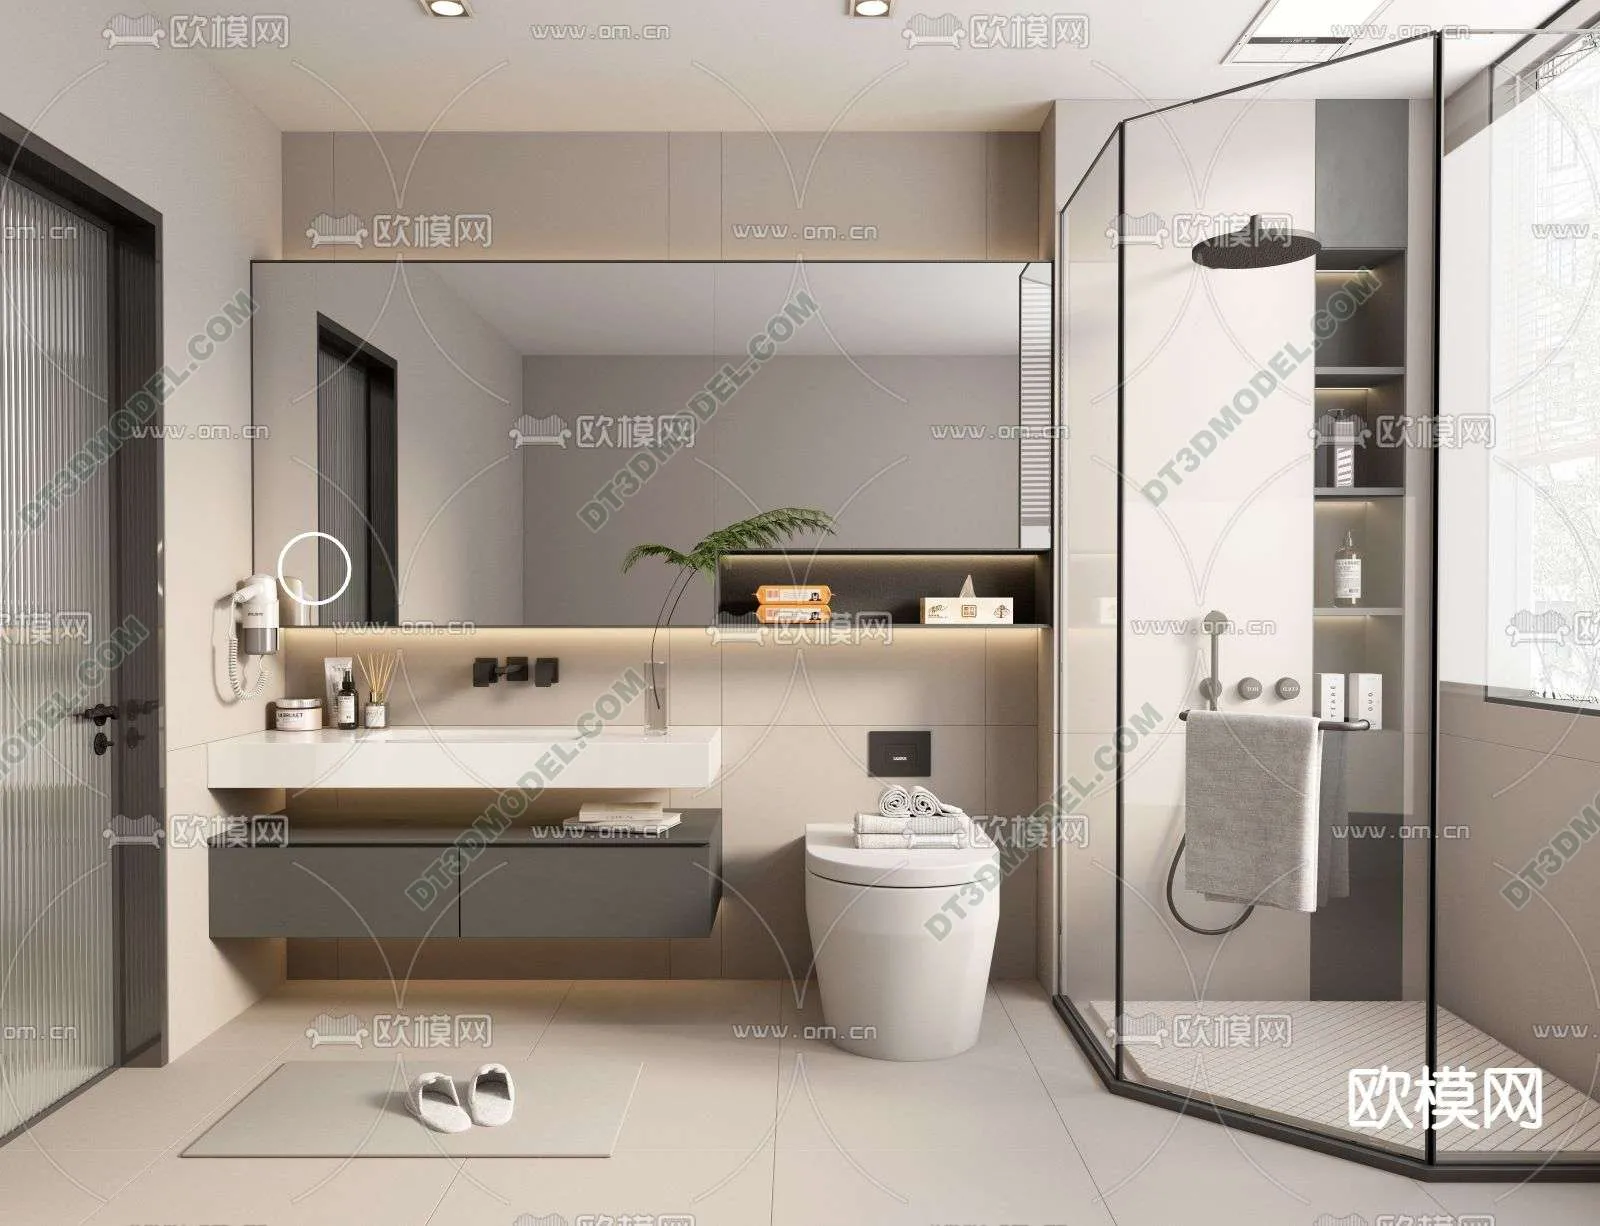 Toilet 3D Models – 0080